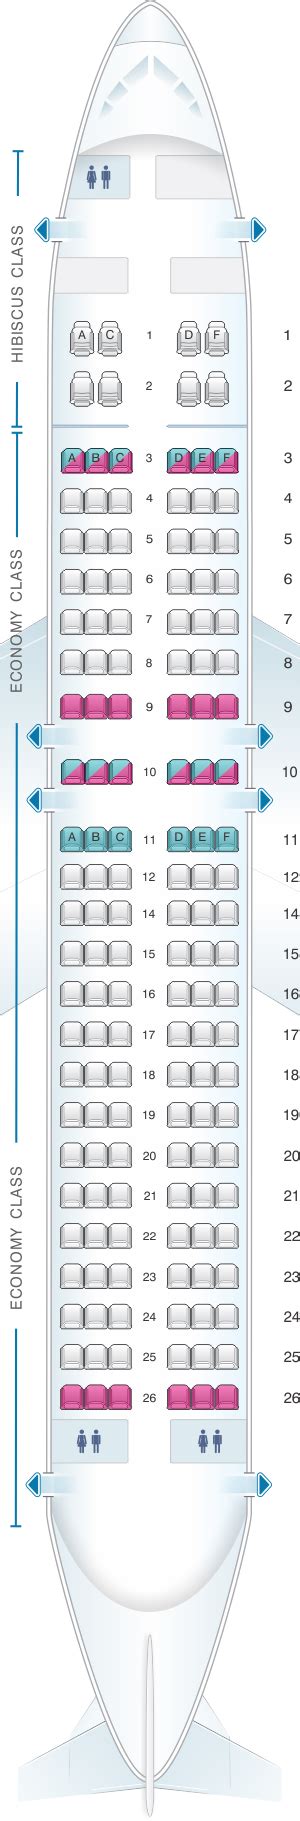 Airbus A320 Go Air Seat Map